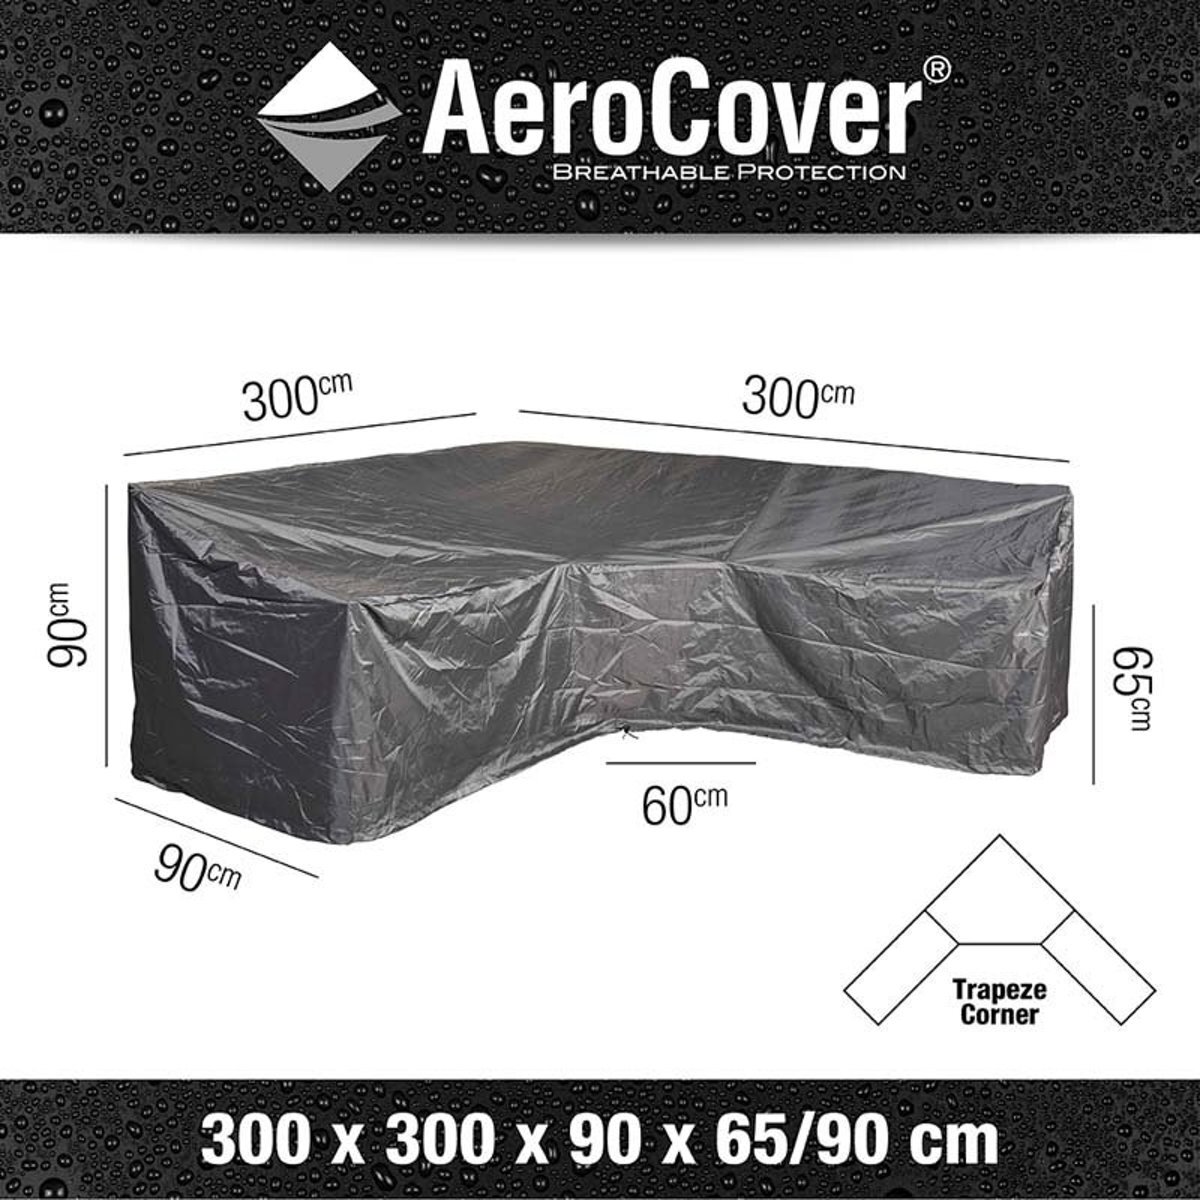 AeroCover loungesethoes hoekset trapeze 300x300x90xh65/90 - antraciet